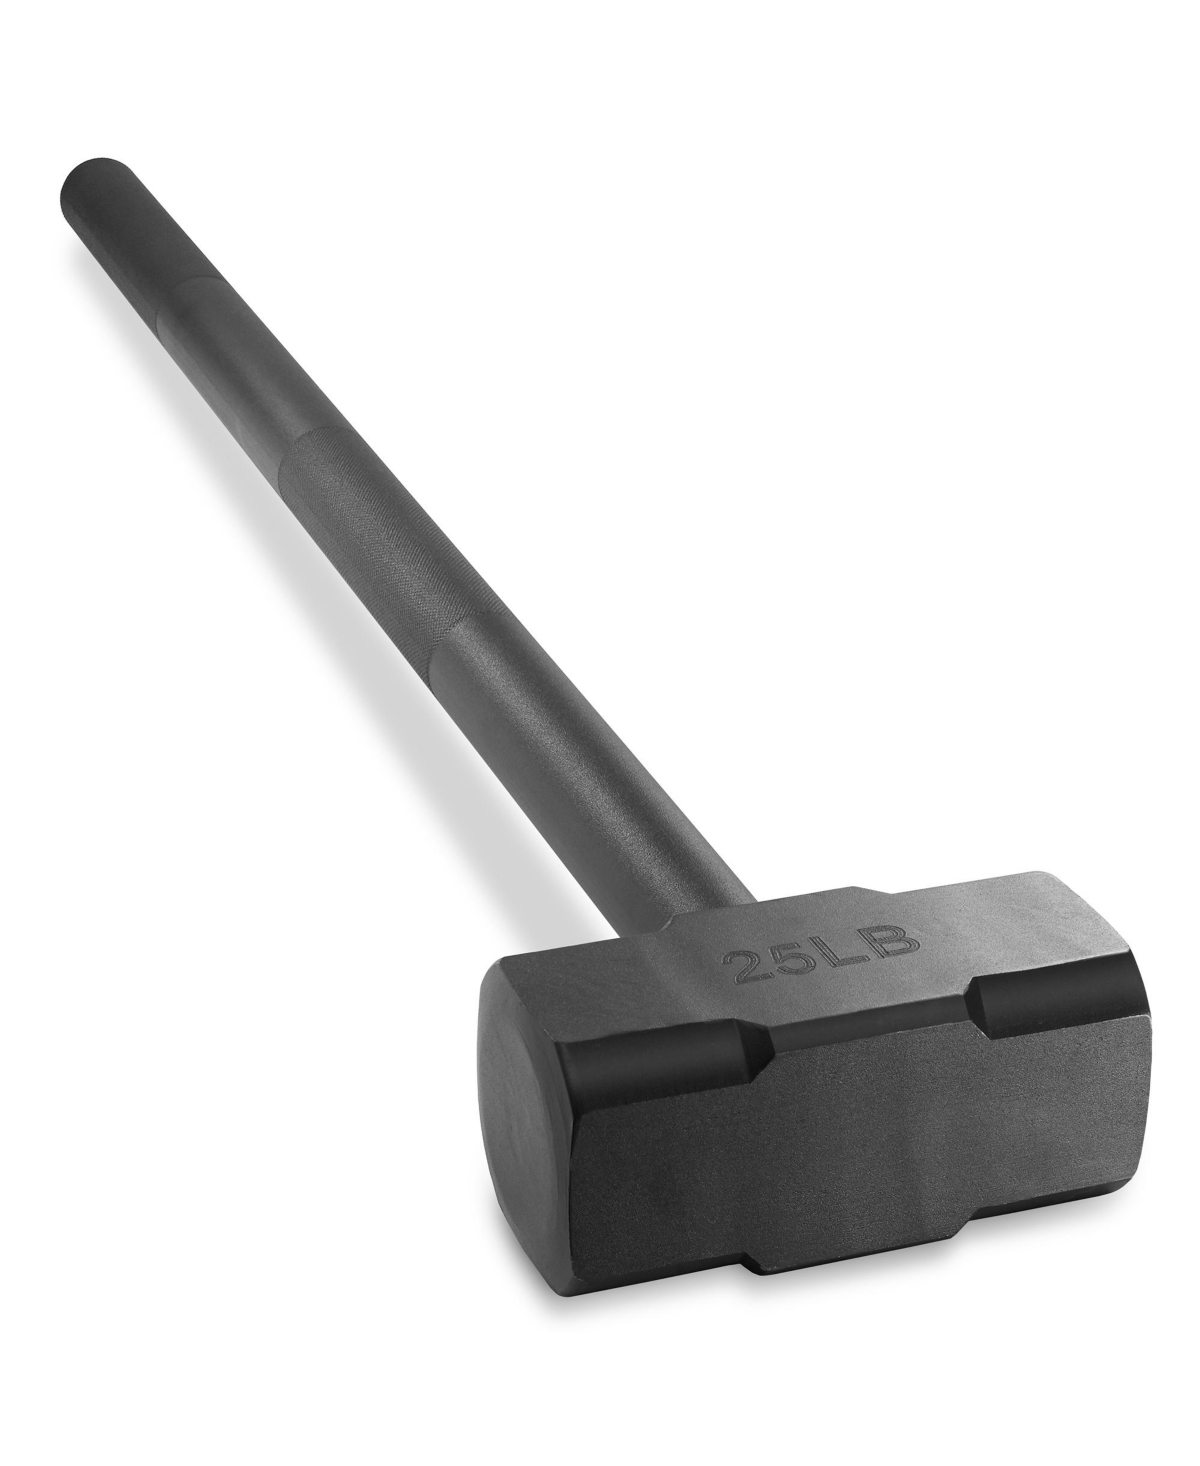 Fitness Hammer, 25 Lb - Steel Hammer for Strength Training - Black